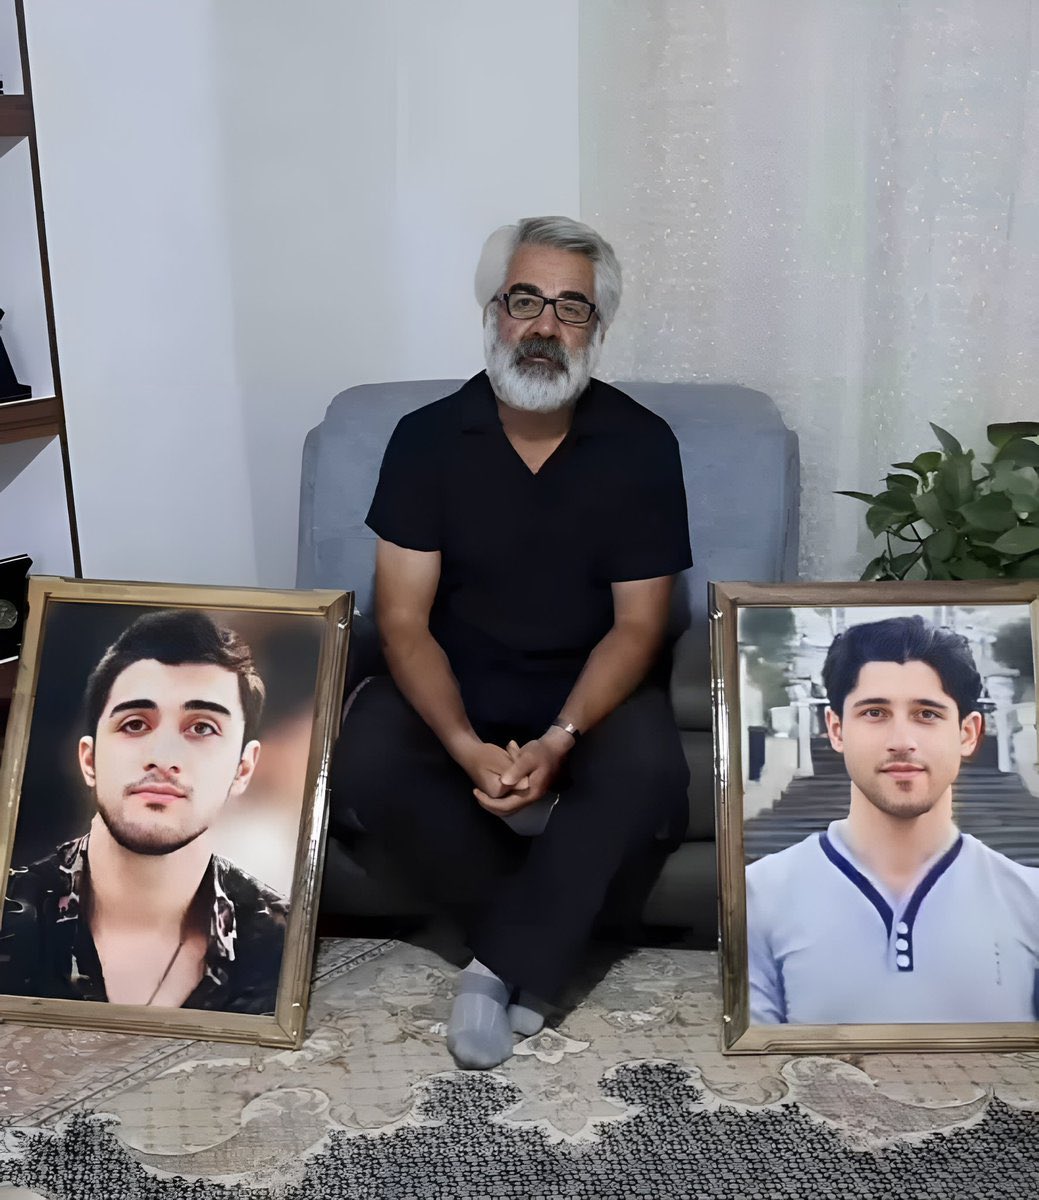 .@Helge_Limburg :Ein Vater trauert um seinen ermordeten Sohn. Und stellt öffentlich Fragen an die Mörder. Im #Iran wurde er dafür zu 6 Jahren Haft verurteilt. Die Verbrechen des Regime gehen weiter. Ich fordere die sofortige Freilassung von #MashallahKarami, dem Vater von